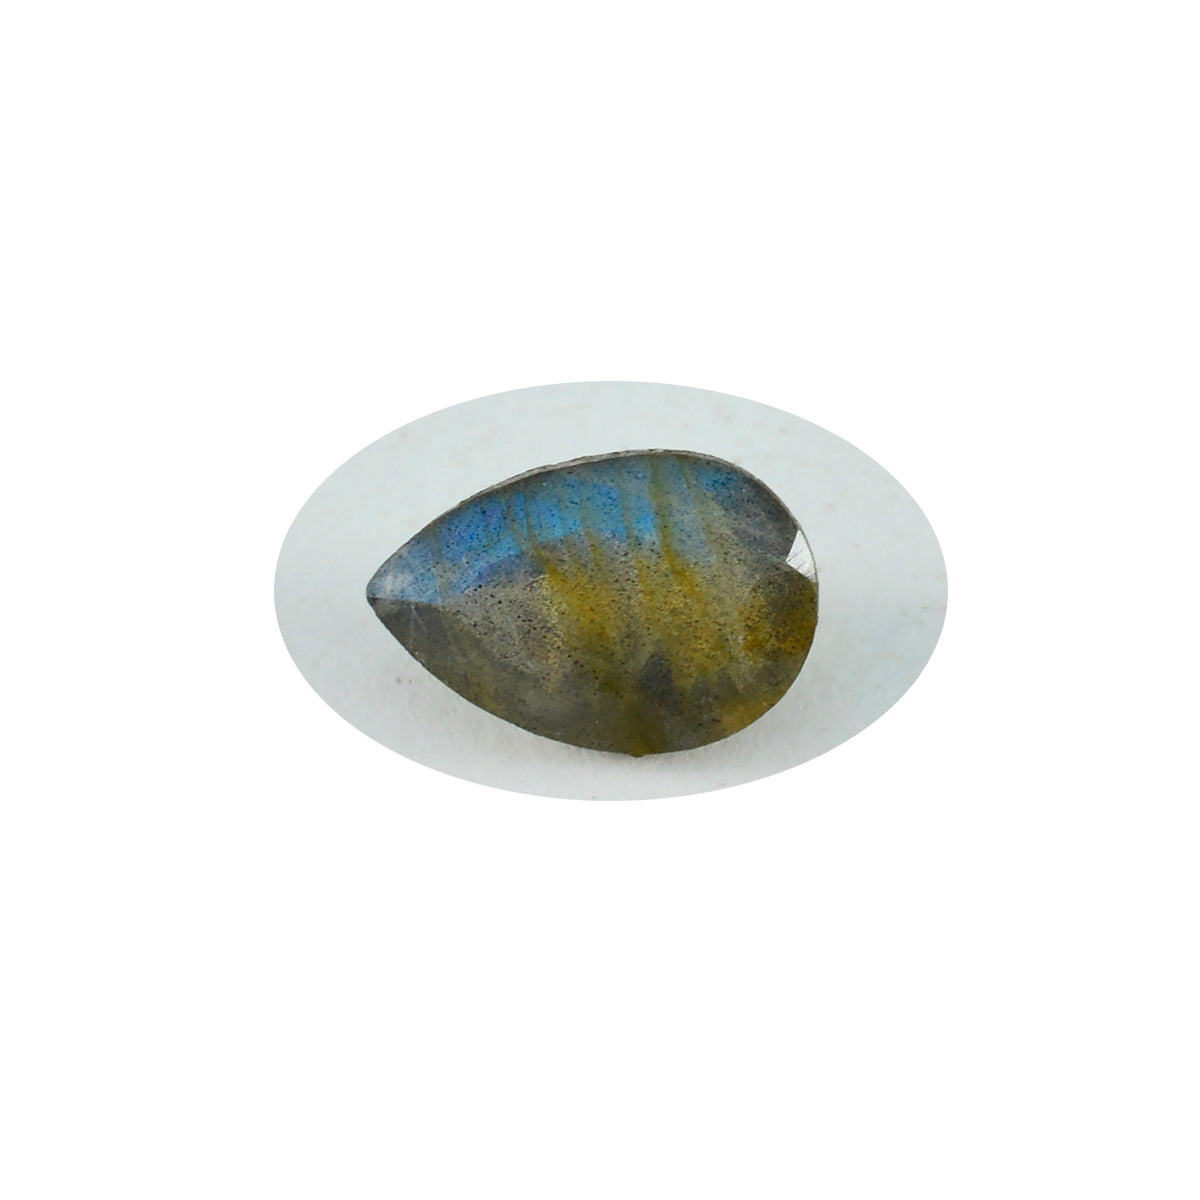 riyogems 1 шт. натуральный серый лабрадорит ограненный 10х12 мм грушевидная форма камень отличного качества